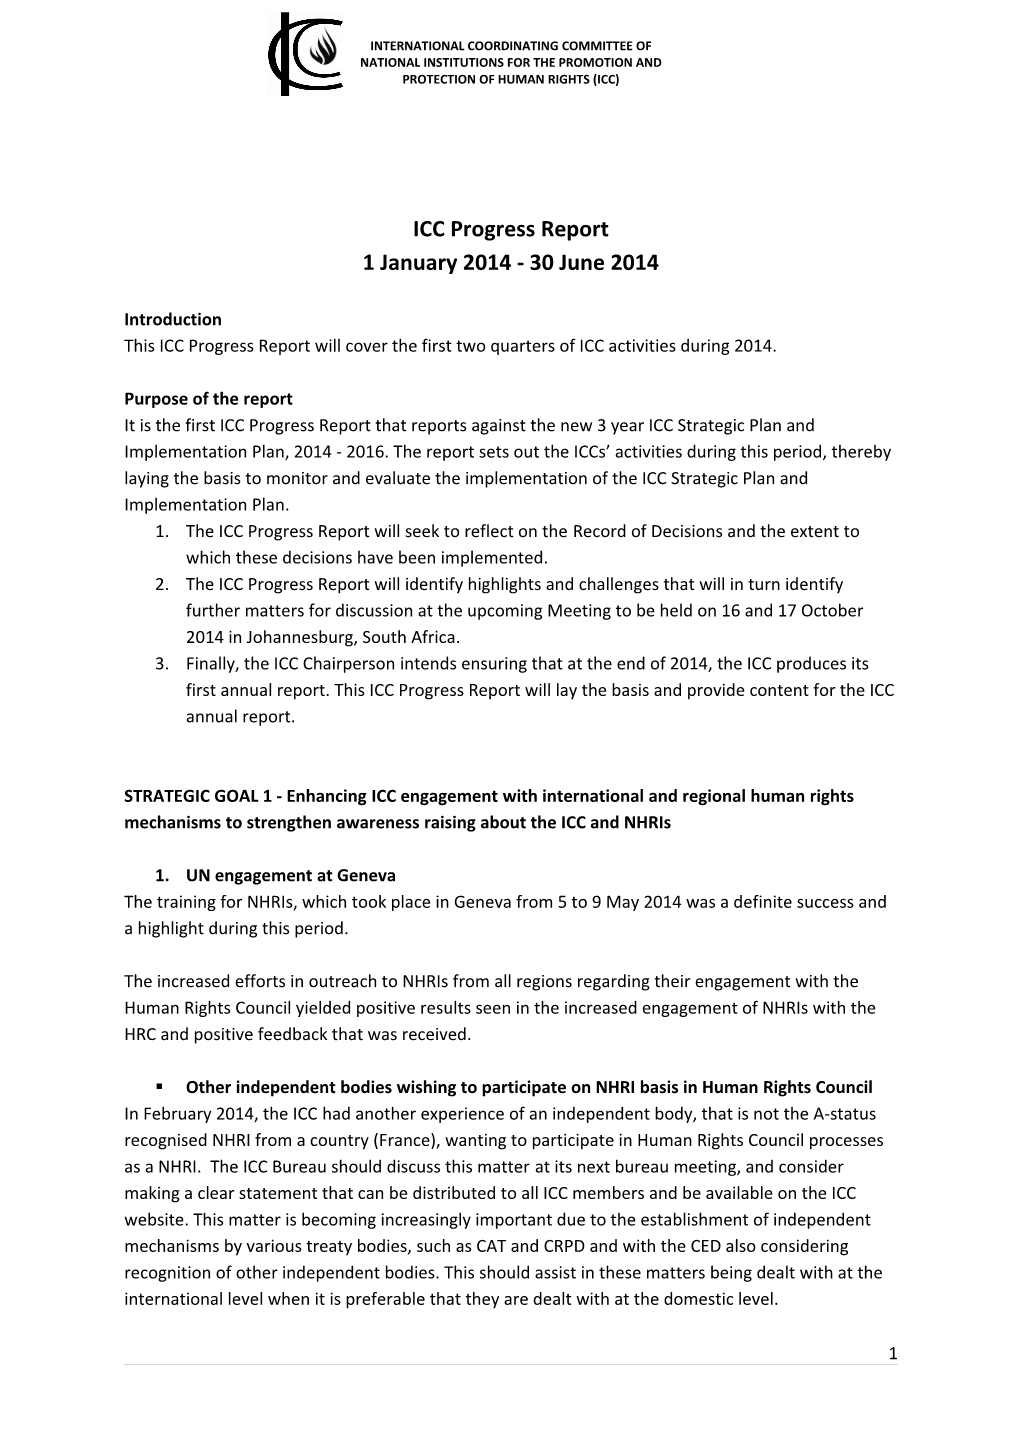 ICC Progress Report Jan-June 2014